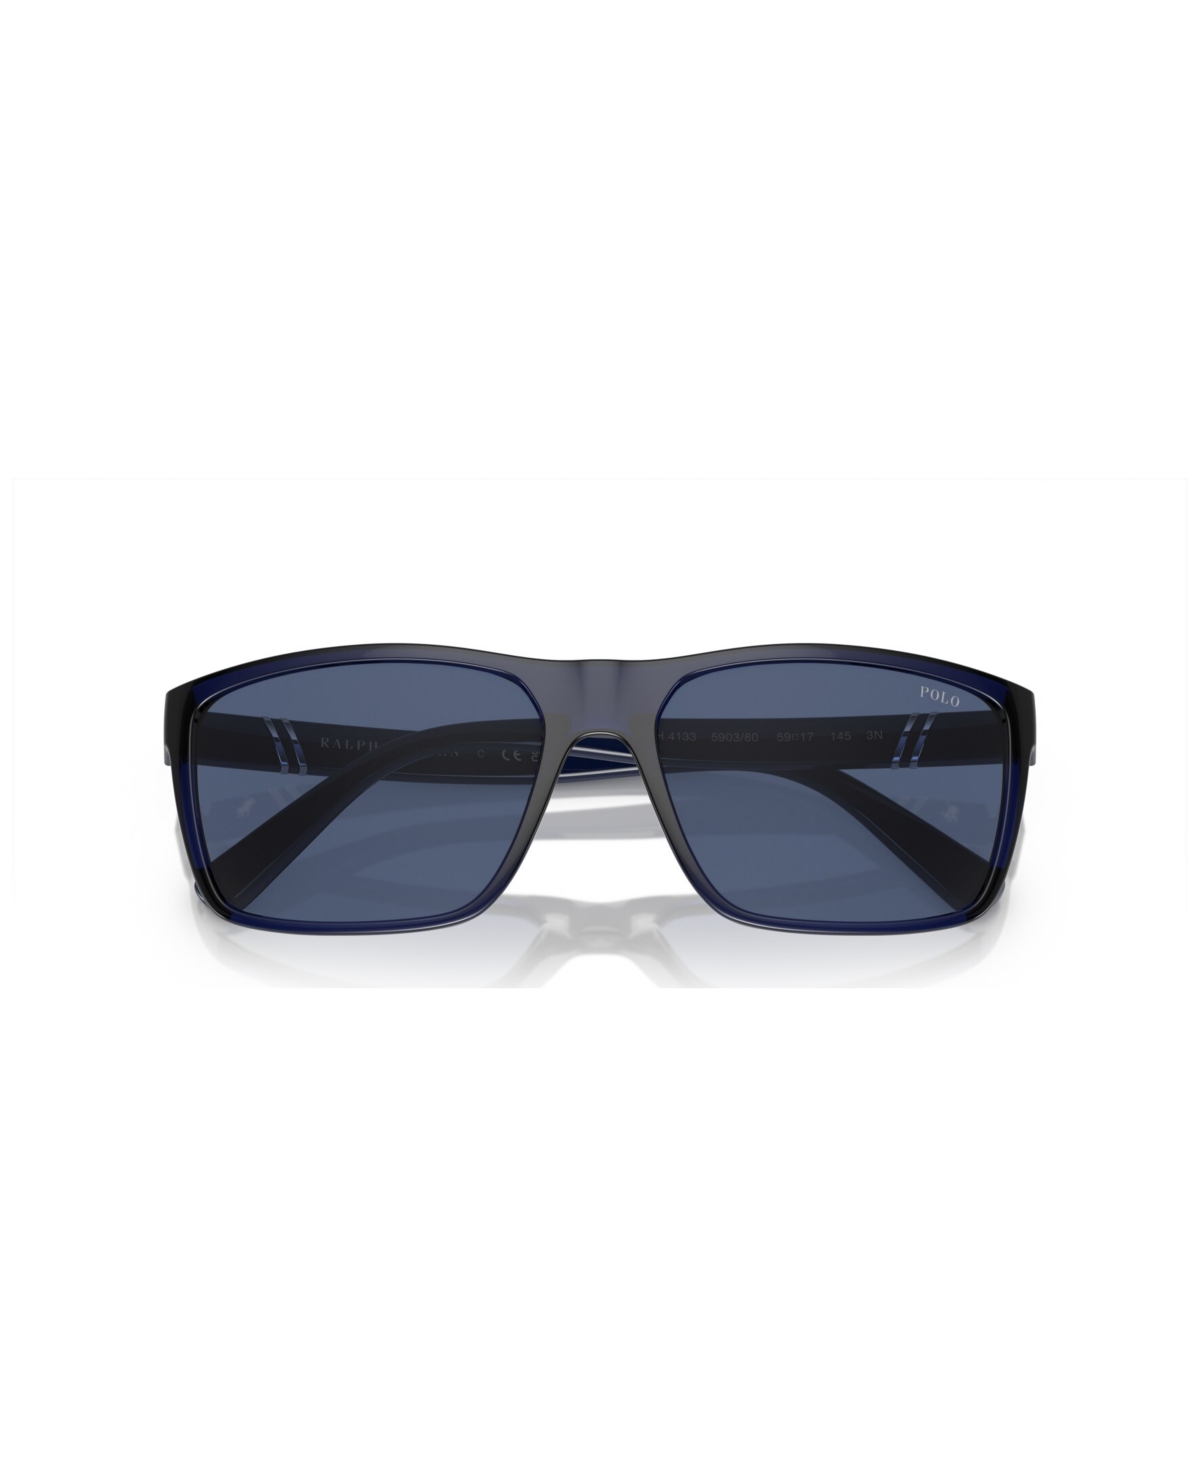 Shop Polo Ralph Lauren Men's Sunglasses Ph4133 In Shiny Transparent Navy Blue